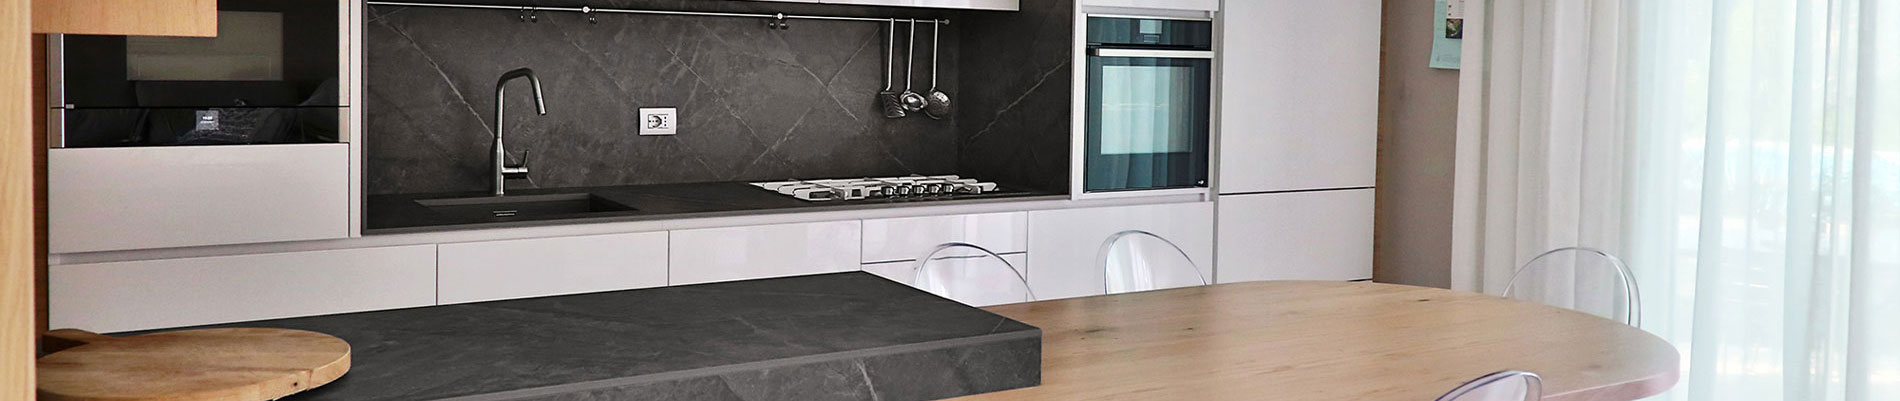 Meneghel Marmi : piani cucina su misura in quarzo, gres, Dekton, marmo e granito